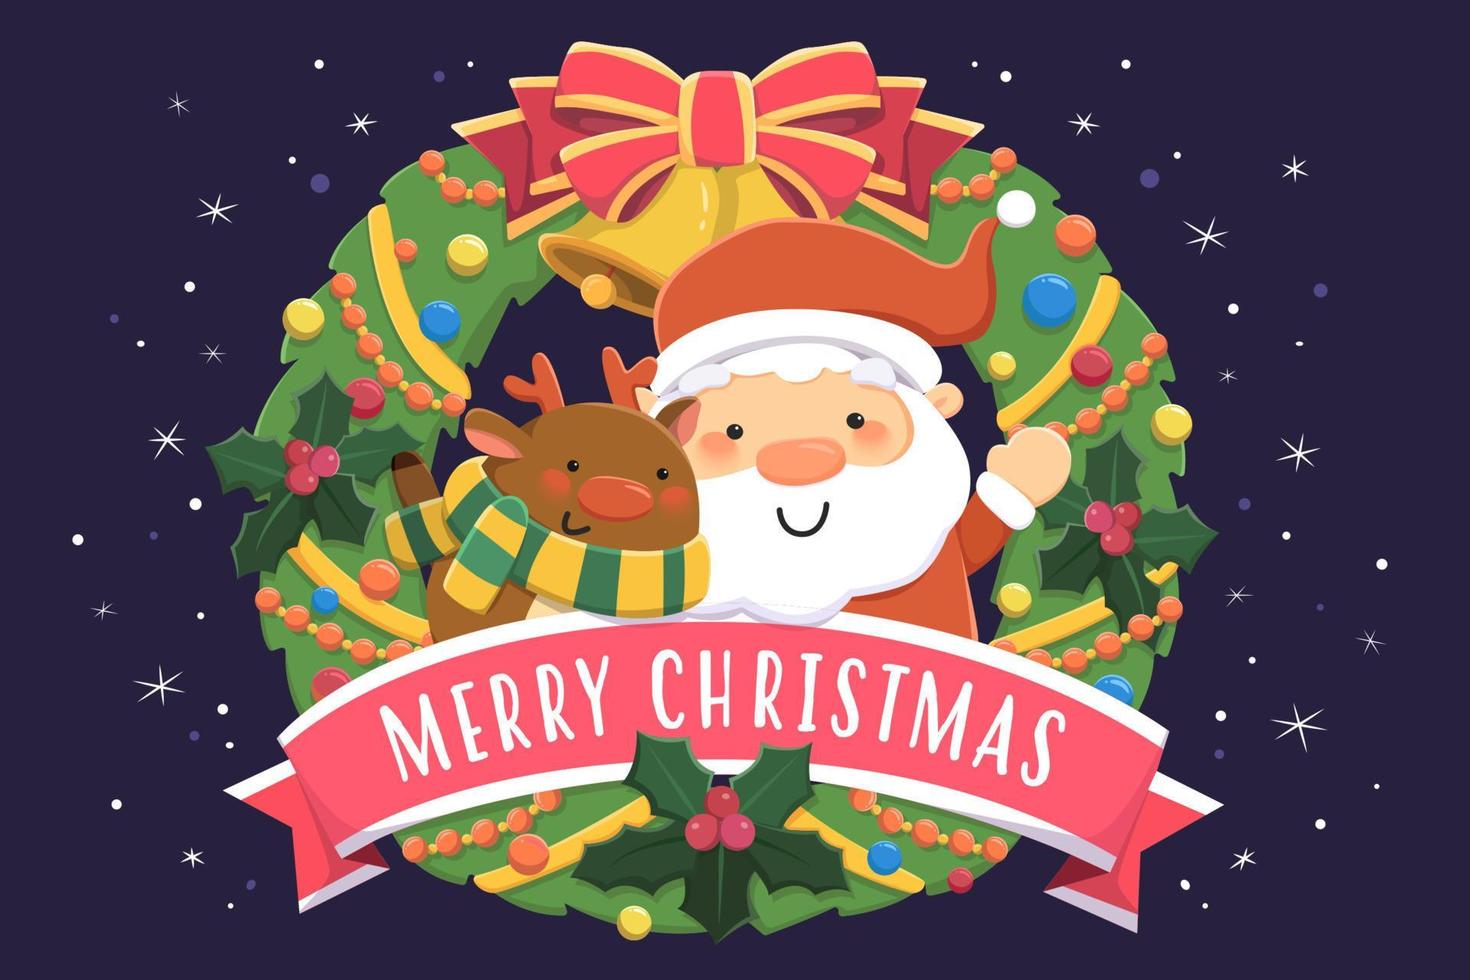 diseño de tarjeta de feliz navidad. ilustración plana de santa claus y renos saludando desde la corona de navidad sobre fondo azul oscuro vector